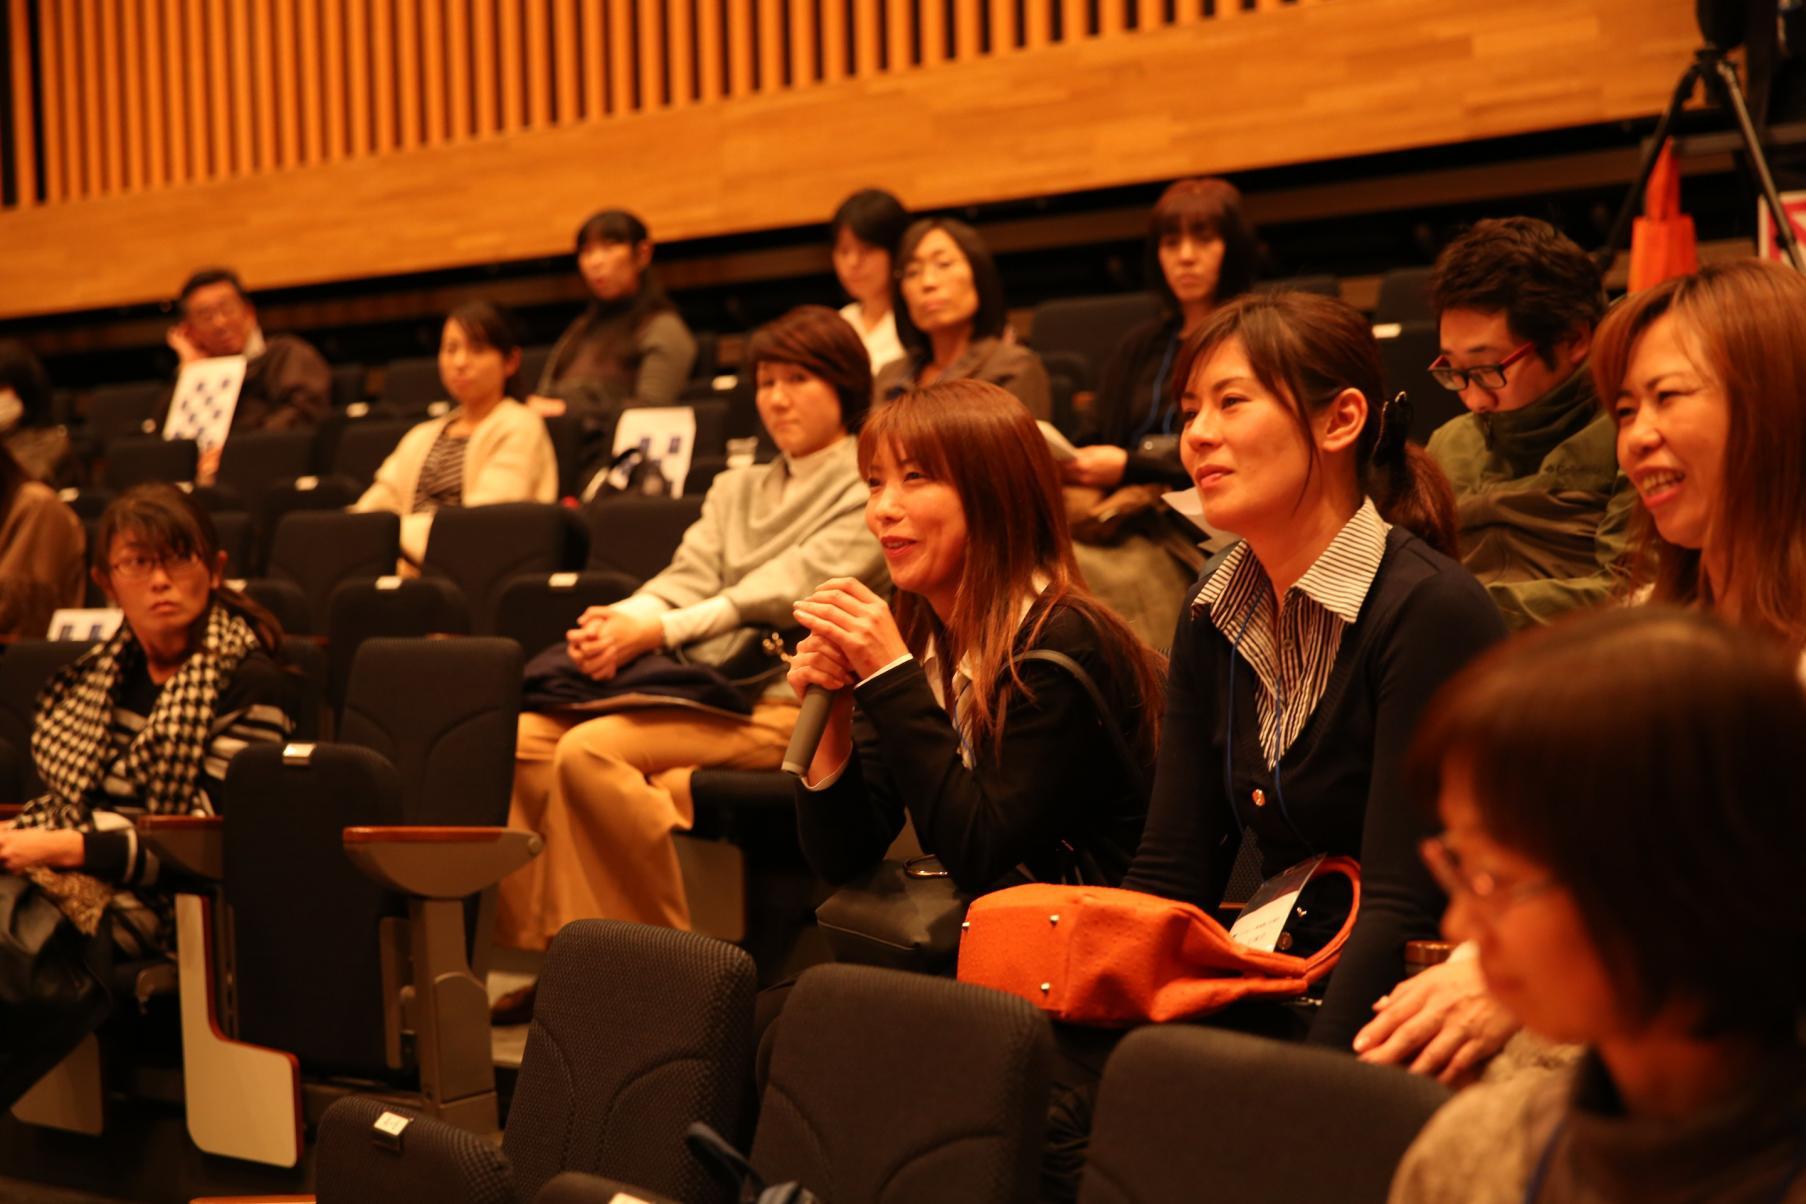 座席に座り講演を聞く、研修生たち参加者の写真